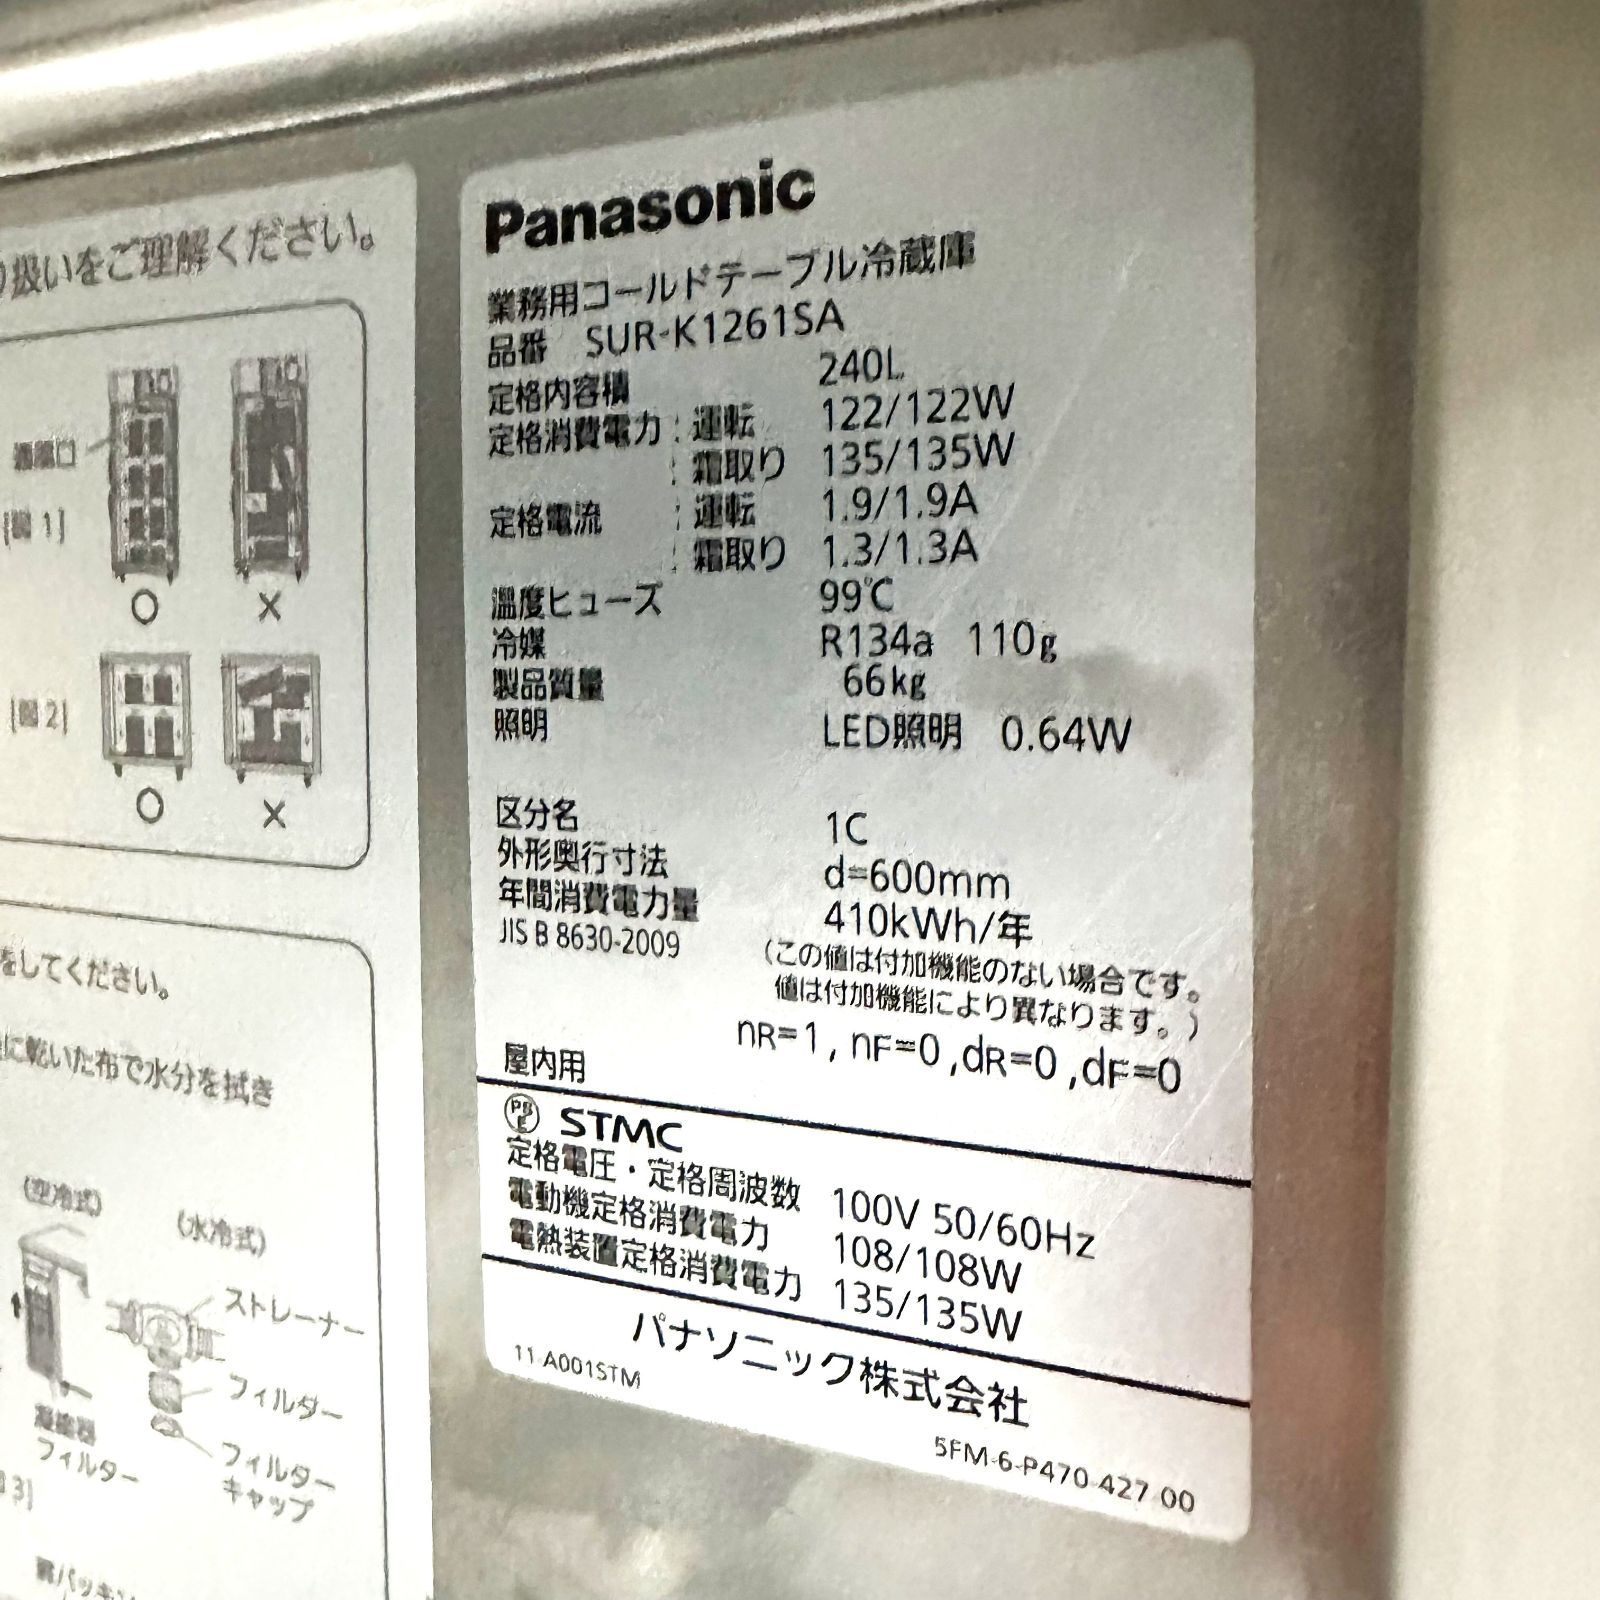 冷蔵コールドテーブル/Panasonic/SUR-K1261SA/幅1200mm×奥行600mm×高さ800mm/2020年製/定格内容積240L/ 業務用/厨房機器/冷蔵庫 Re Mark's メルカリ